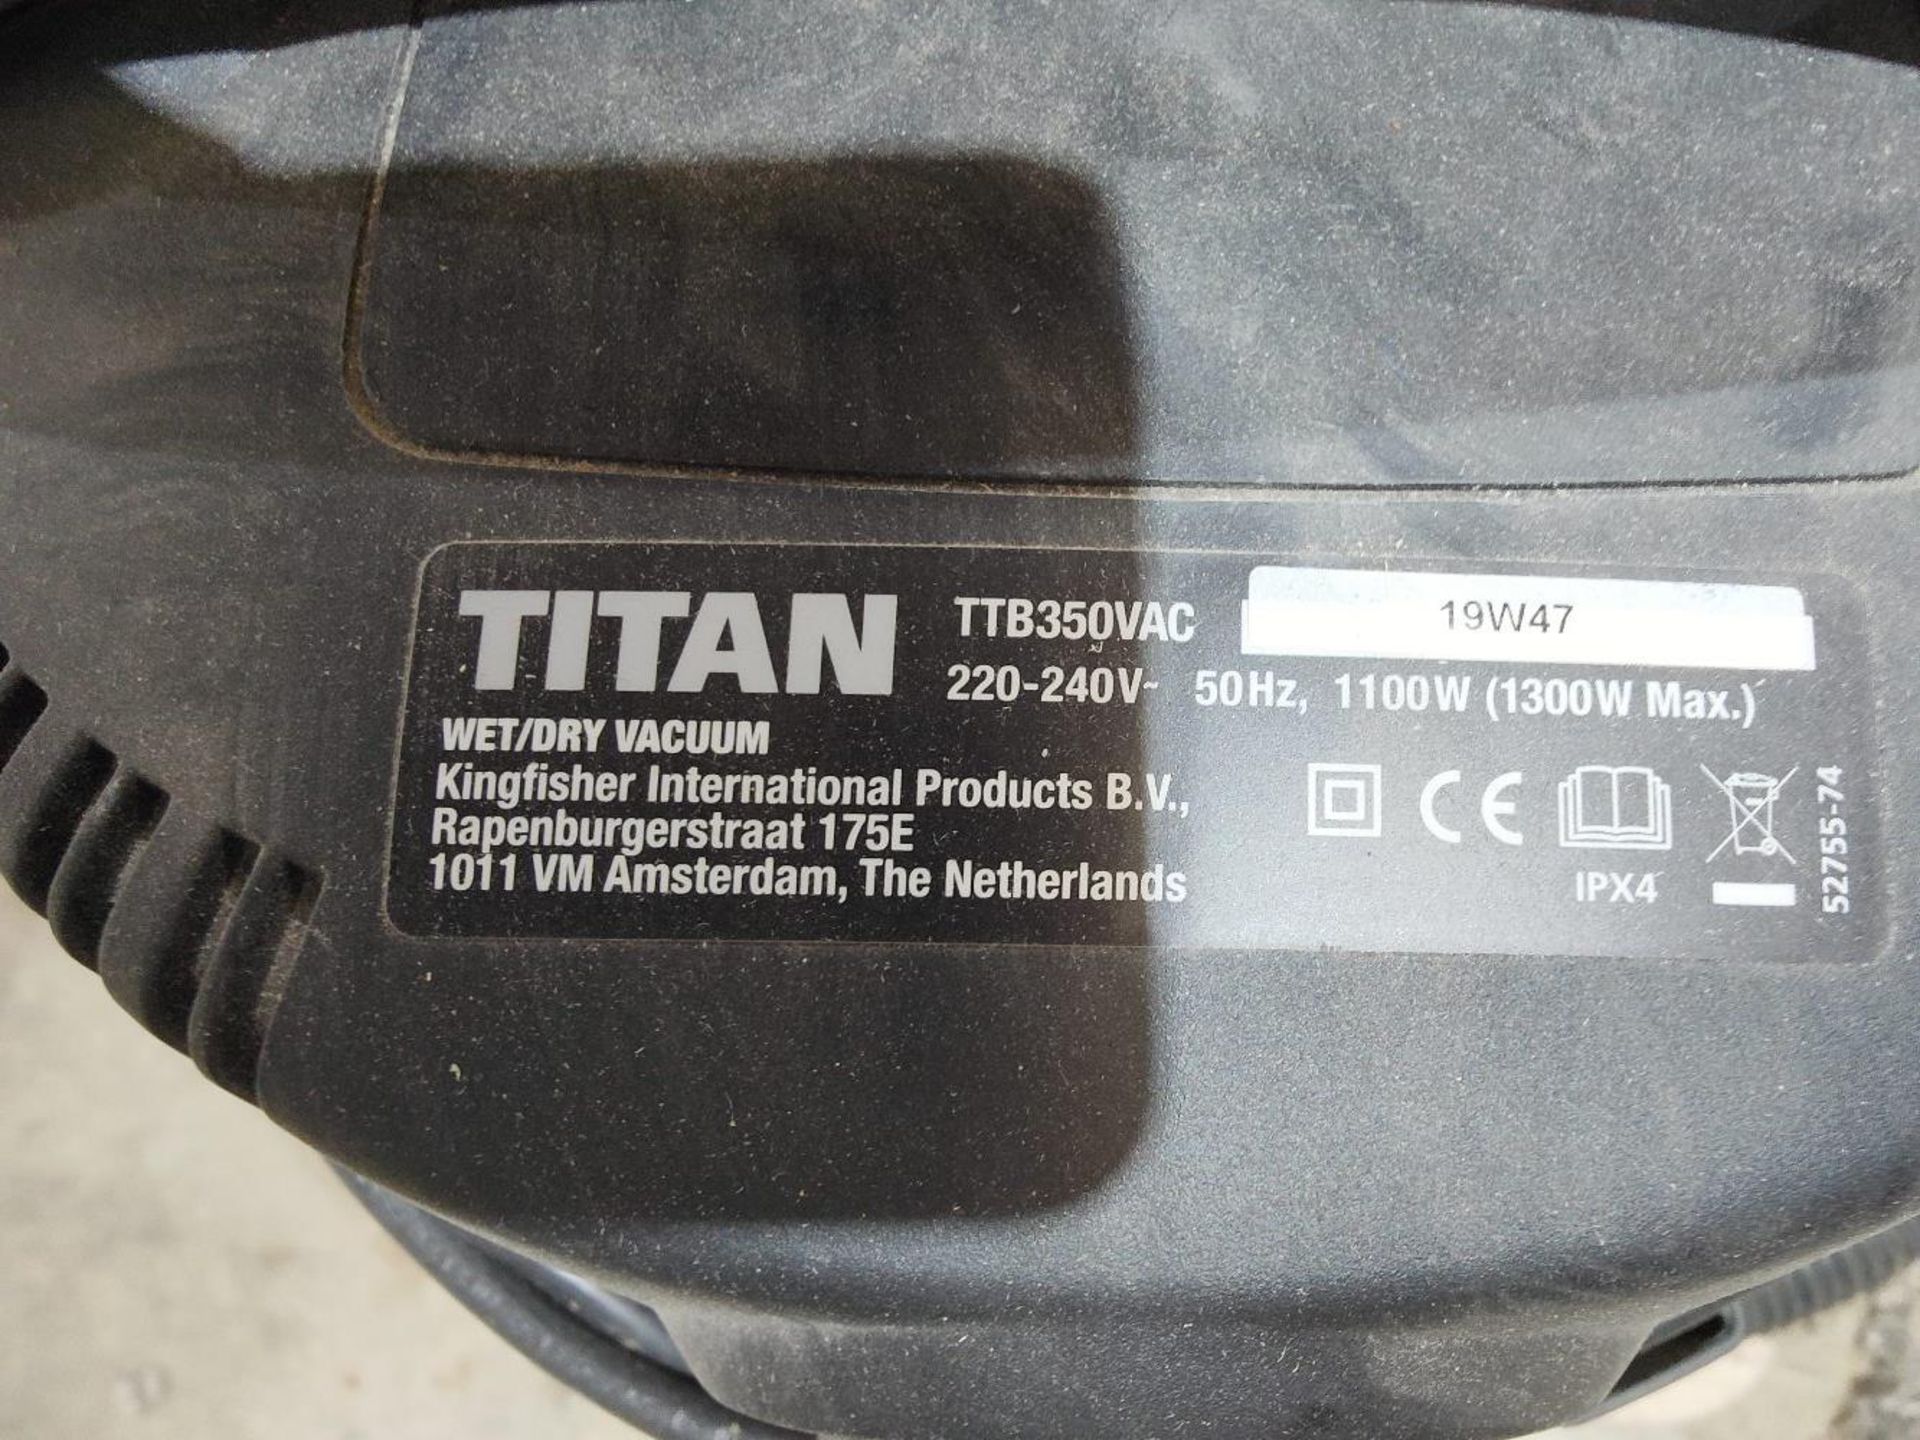 Titan TTB350VAC wet and dry vacuum cleaner - Image 3 of 3